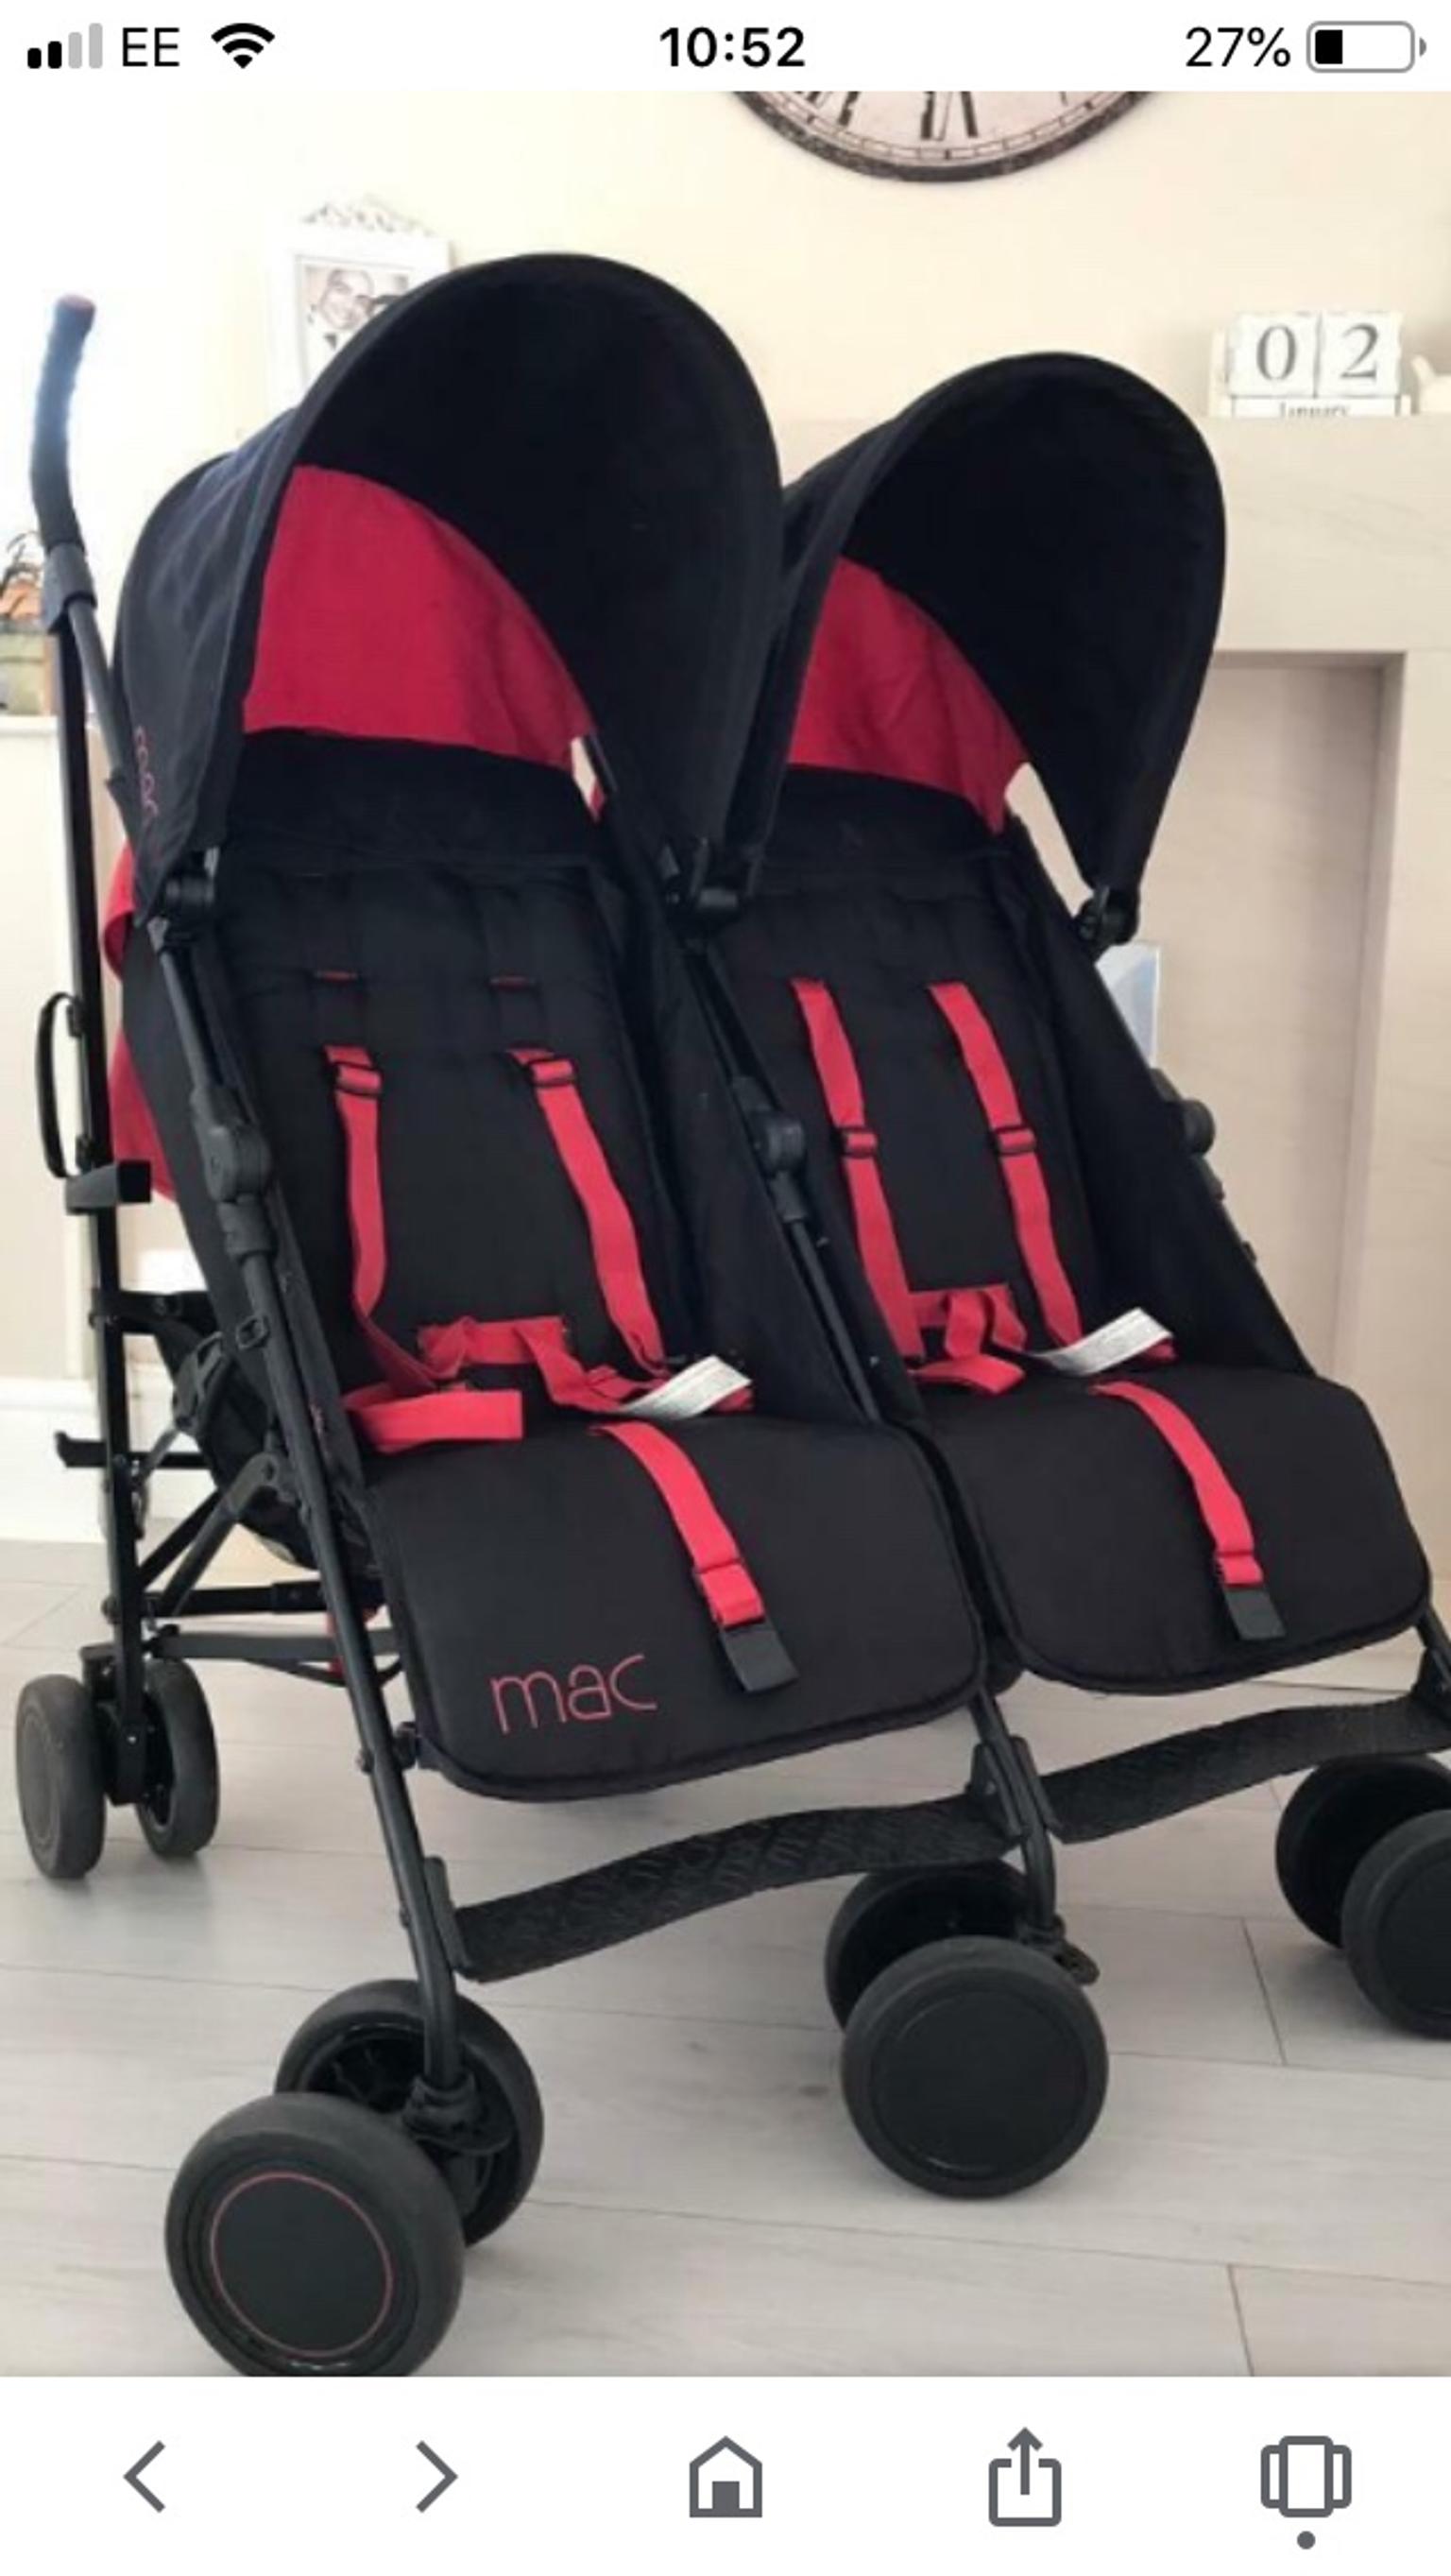 maclaren double stroller used